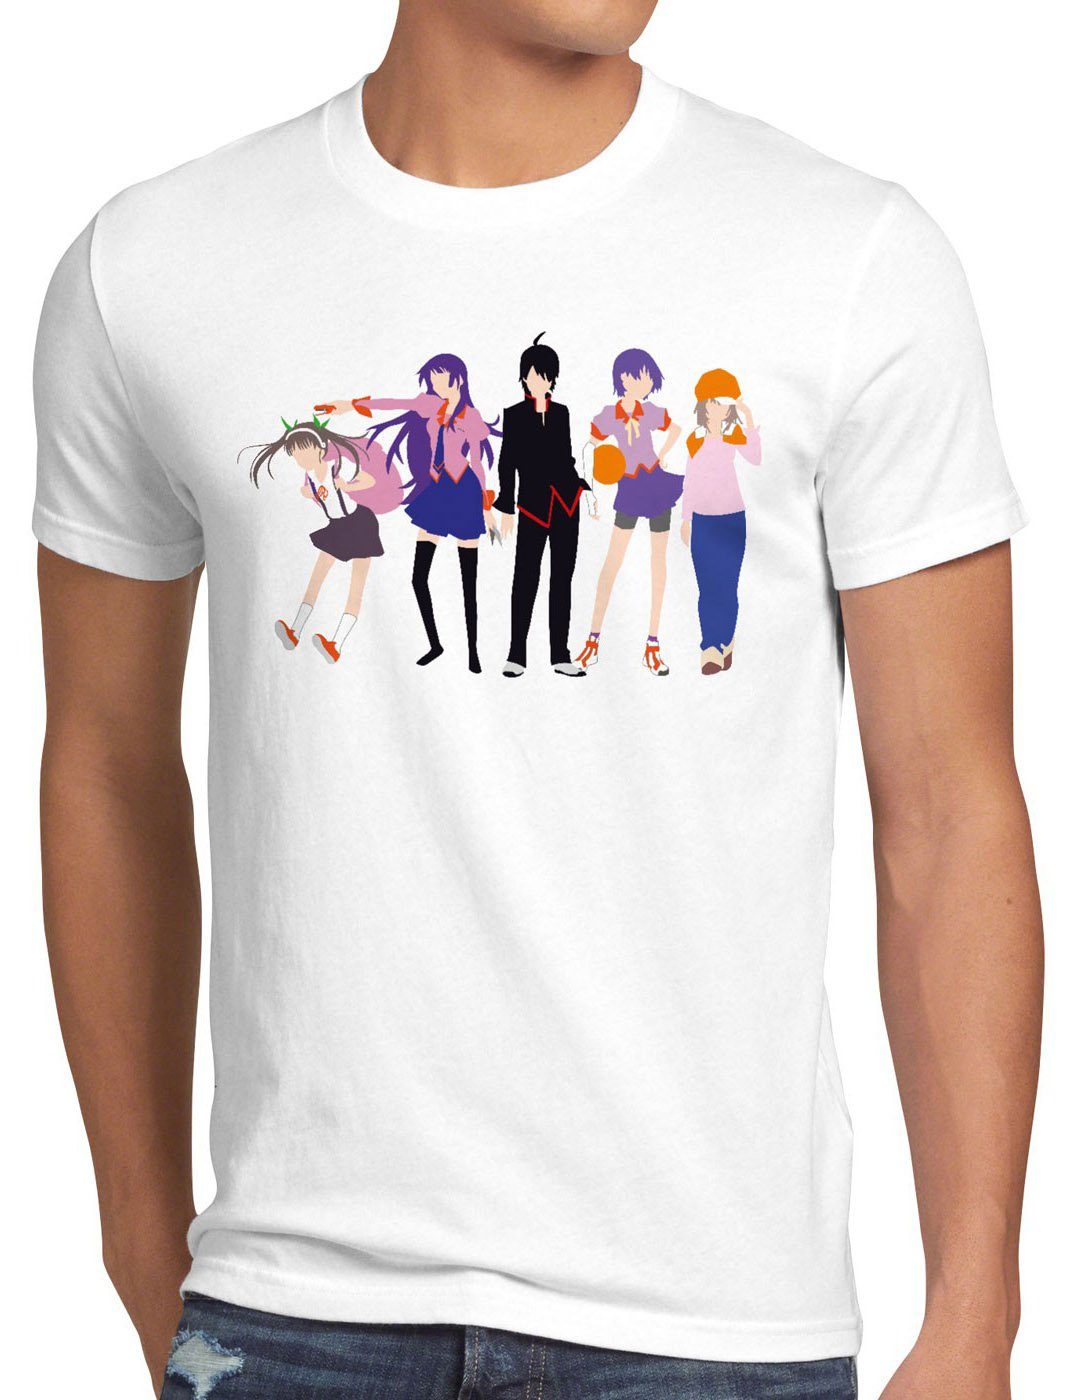 Print-Shirt T-Shirt style3 vampire Bakemonogatari serie weiß slice top Herren Nekomonogatari anime manga